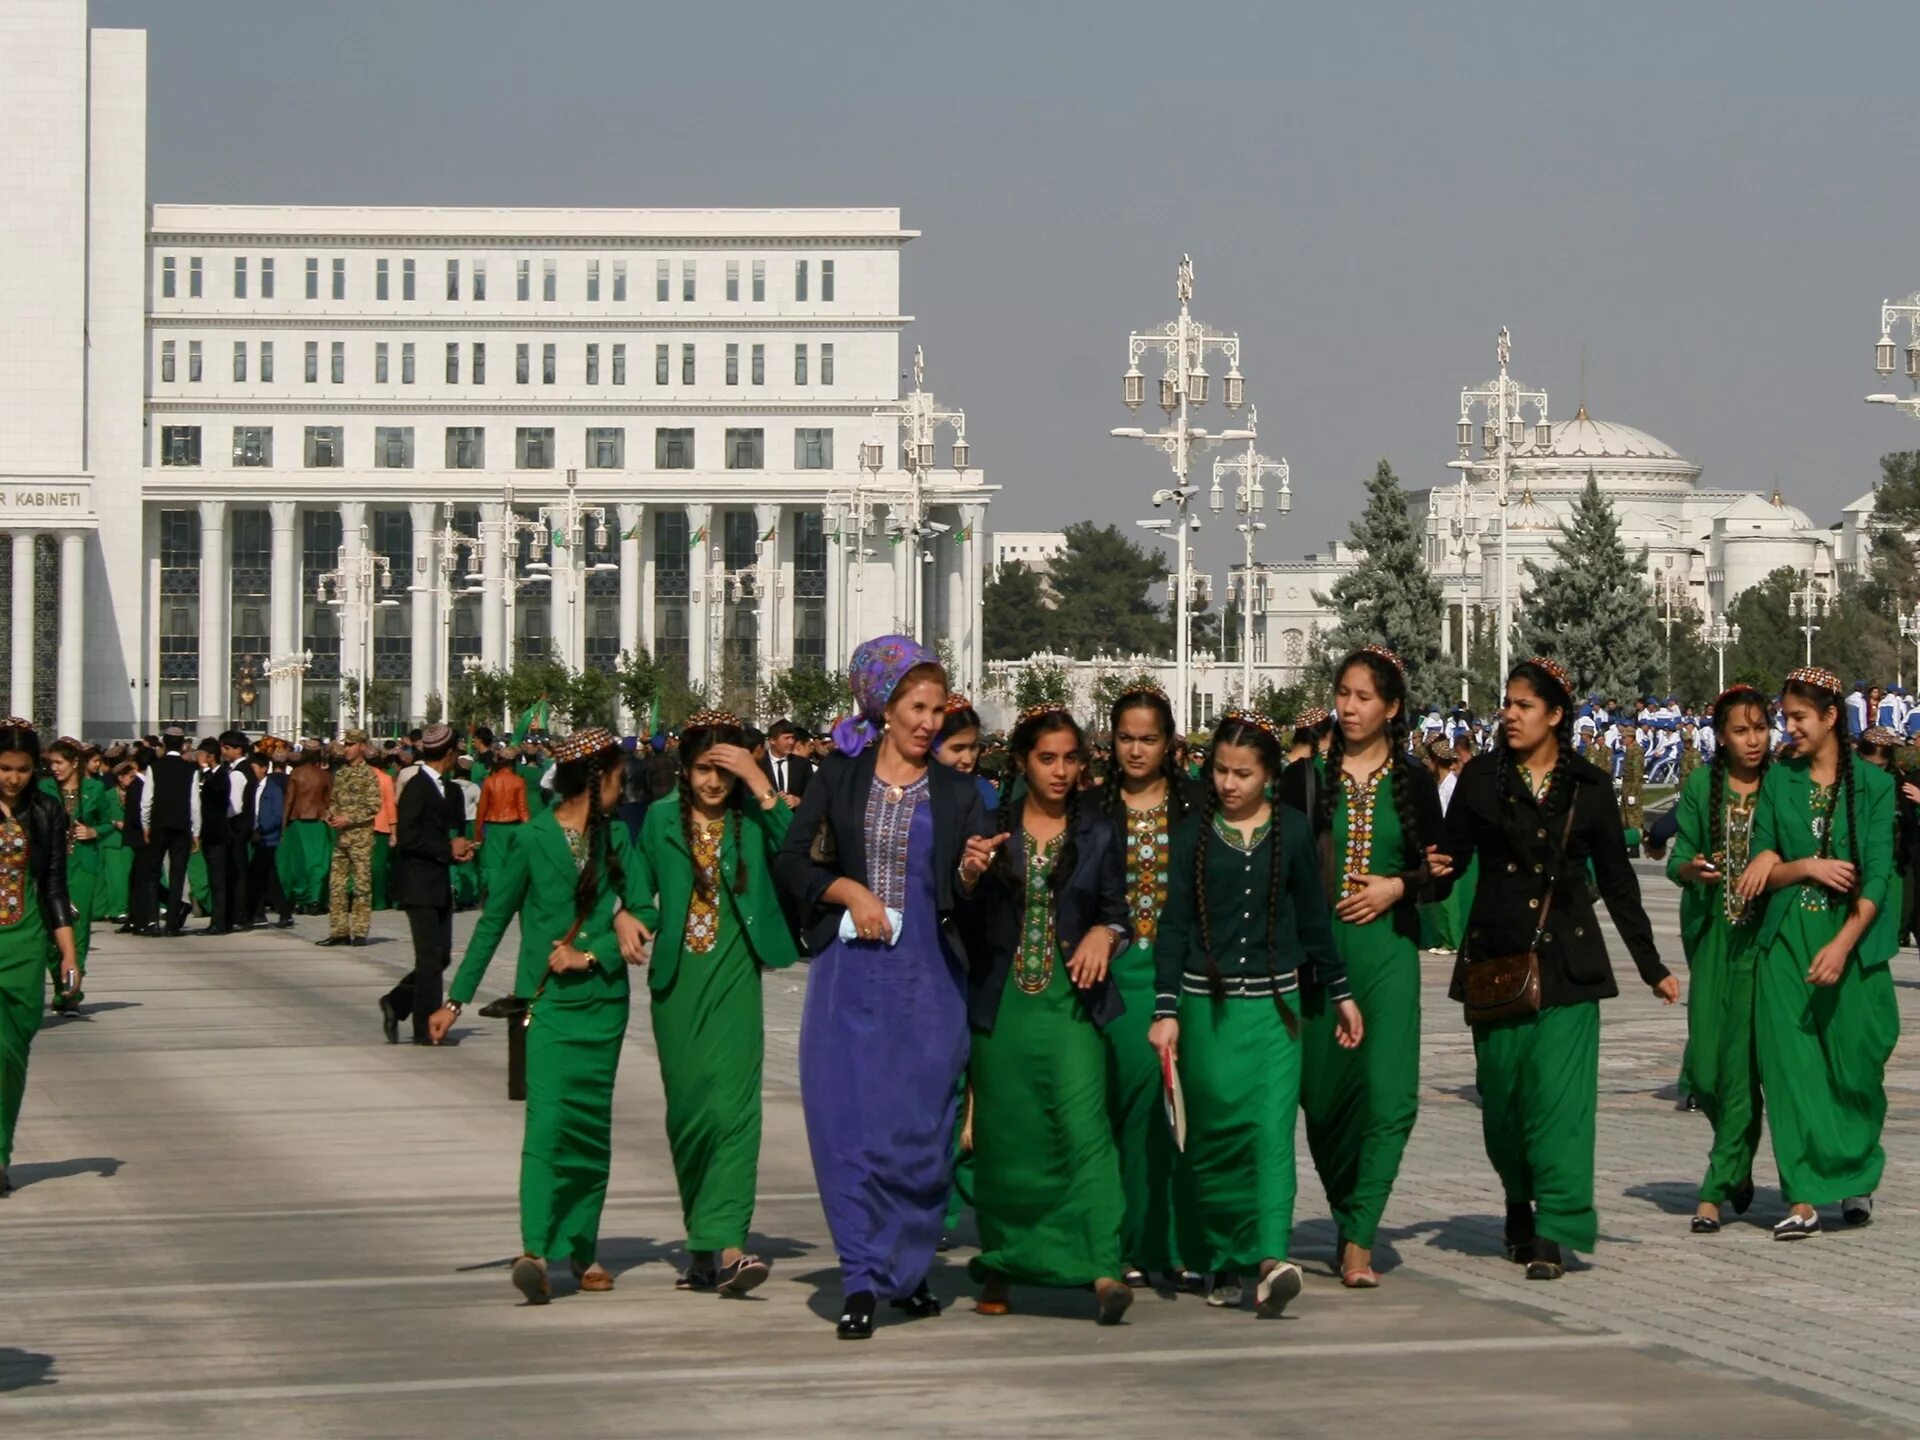 Туркмен число. Туркменистан столица Туркмении Ашхабад. Туркменистан пойтахти. Дворец Рухыет Ашхабад. Ашхабад столица Туркменистана жители.